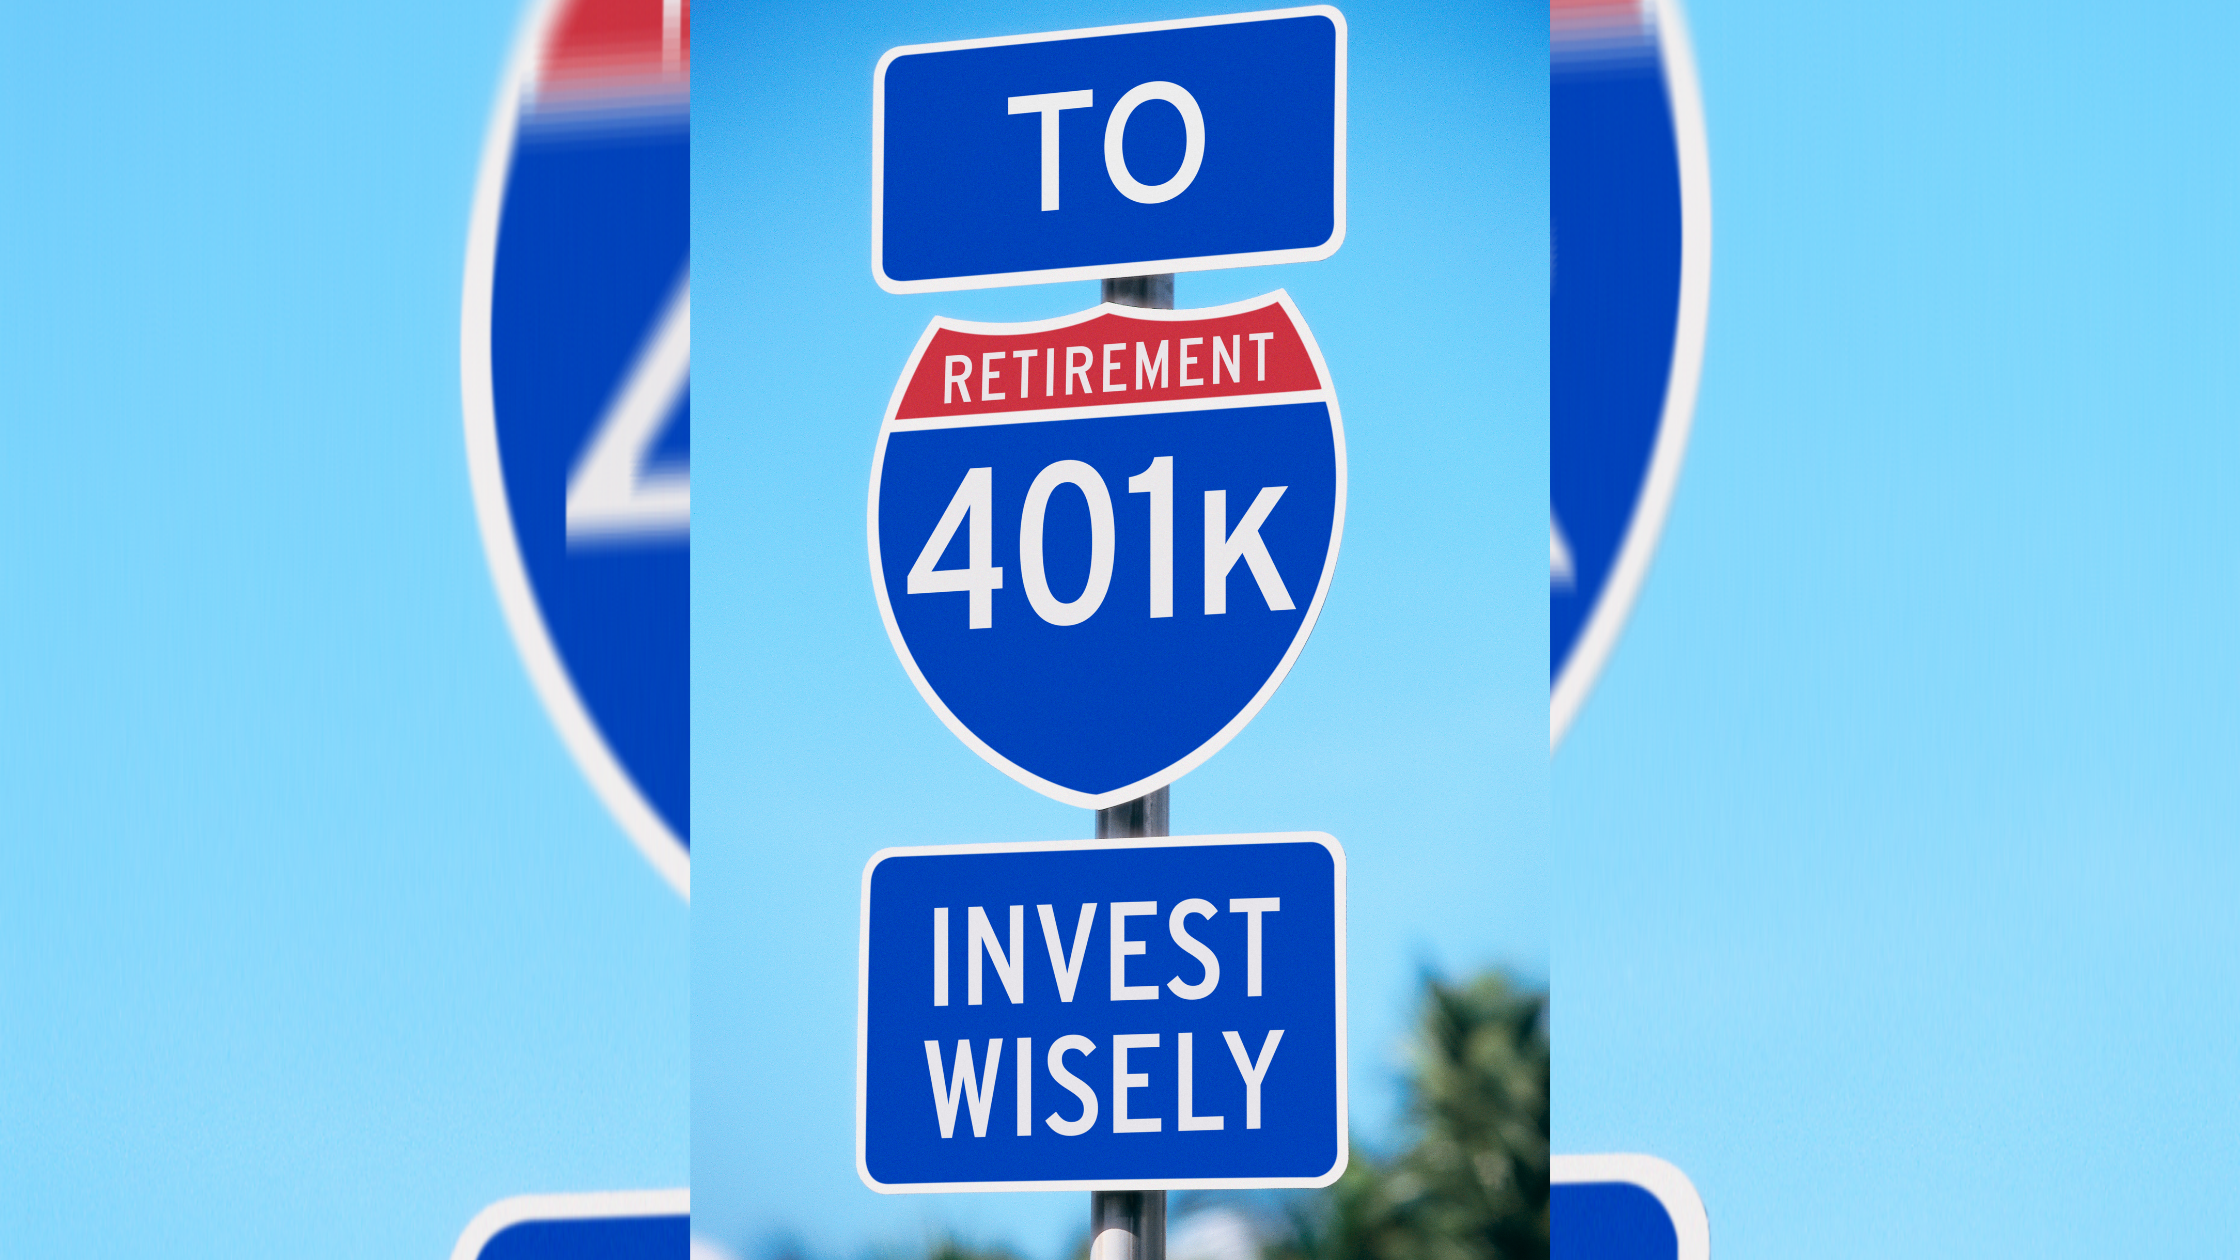 401k, 401(k), 401k investing, 401k retirement plans, 401(k) investment plans